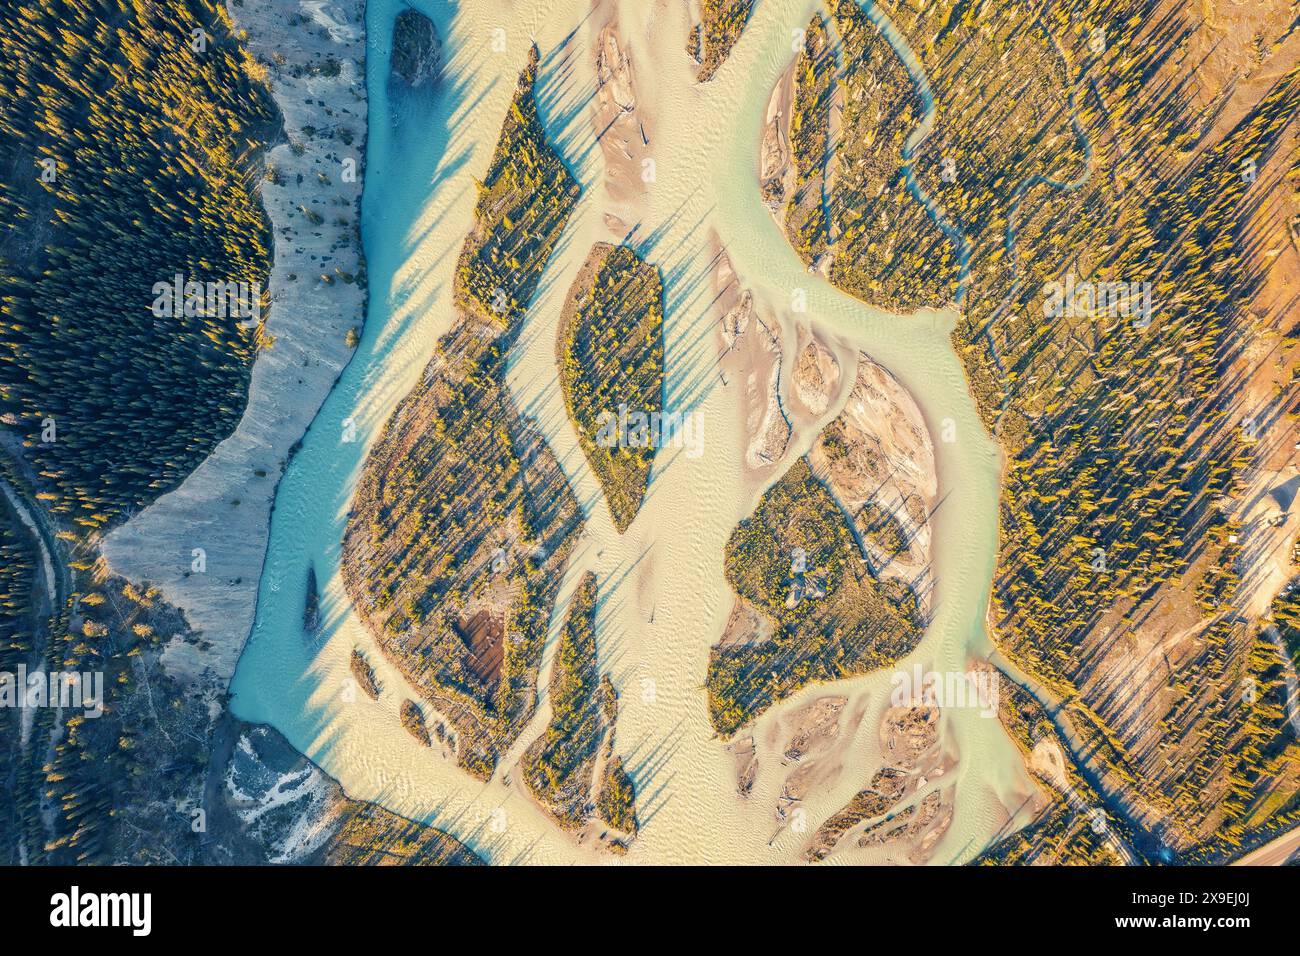 Images filmées par drone d'une rivière sinueuse lors d'une inondation. Forêt, rochers. Nordegg, Alberta, Canada Banque D'Images